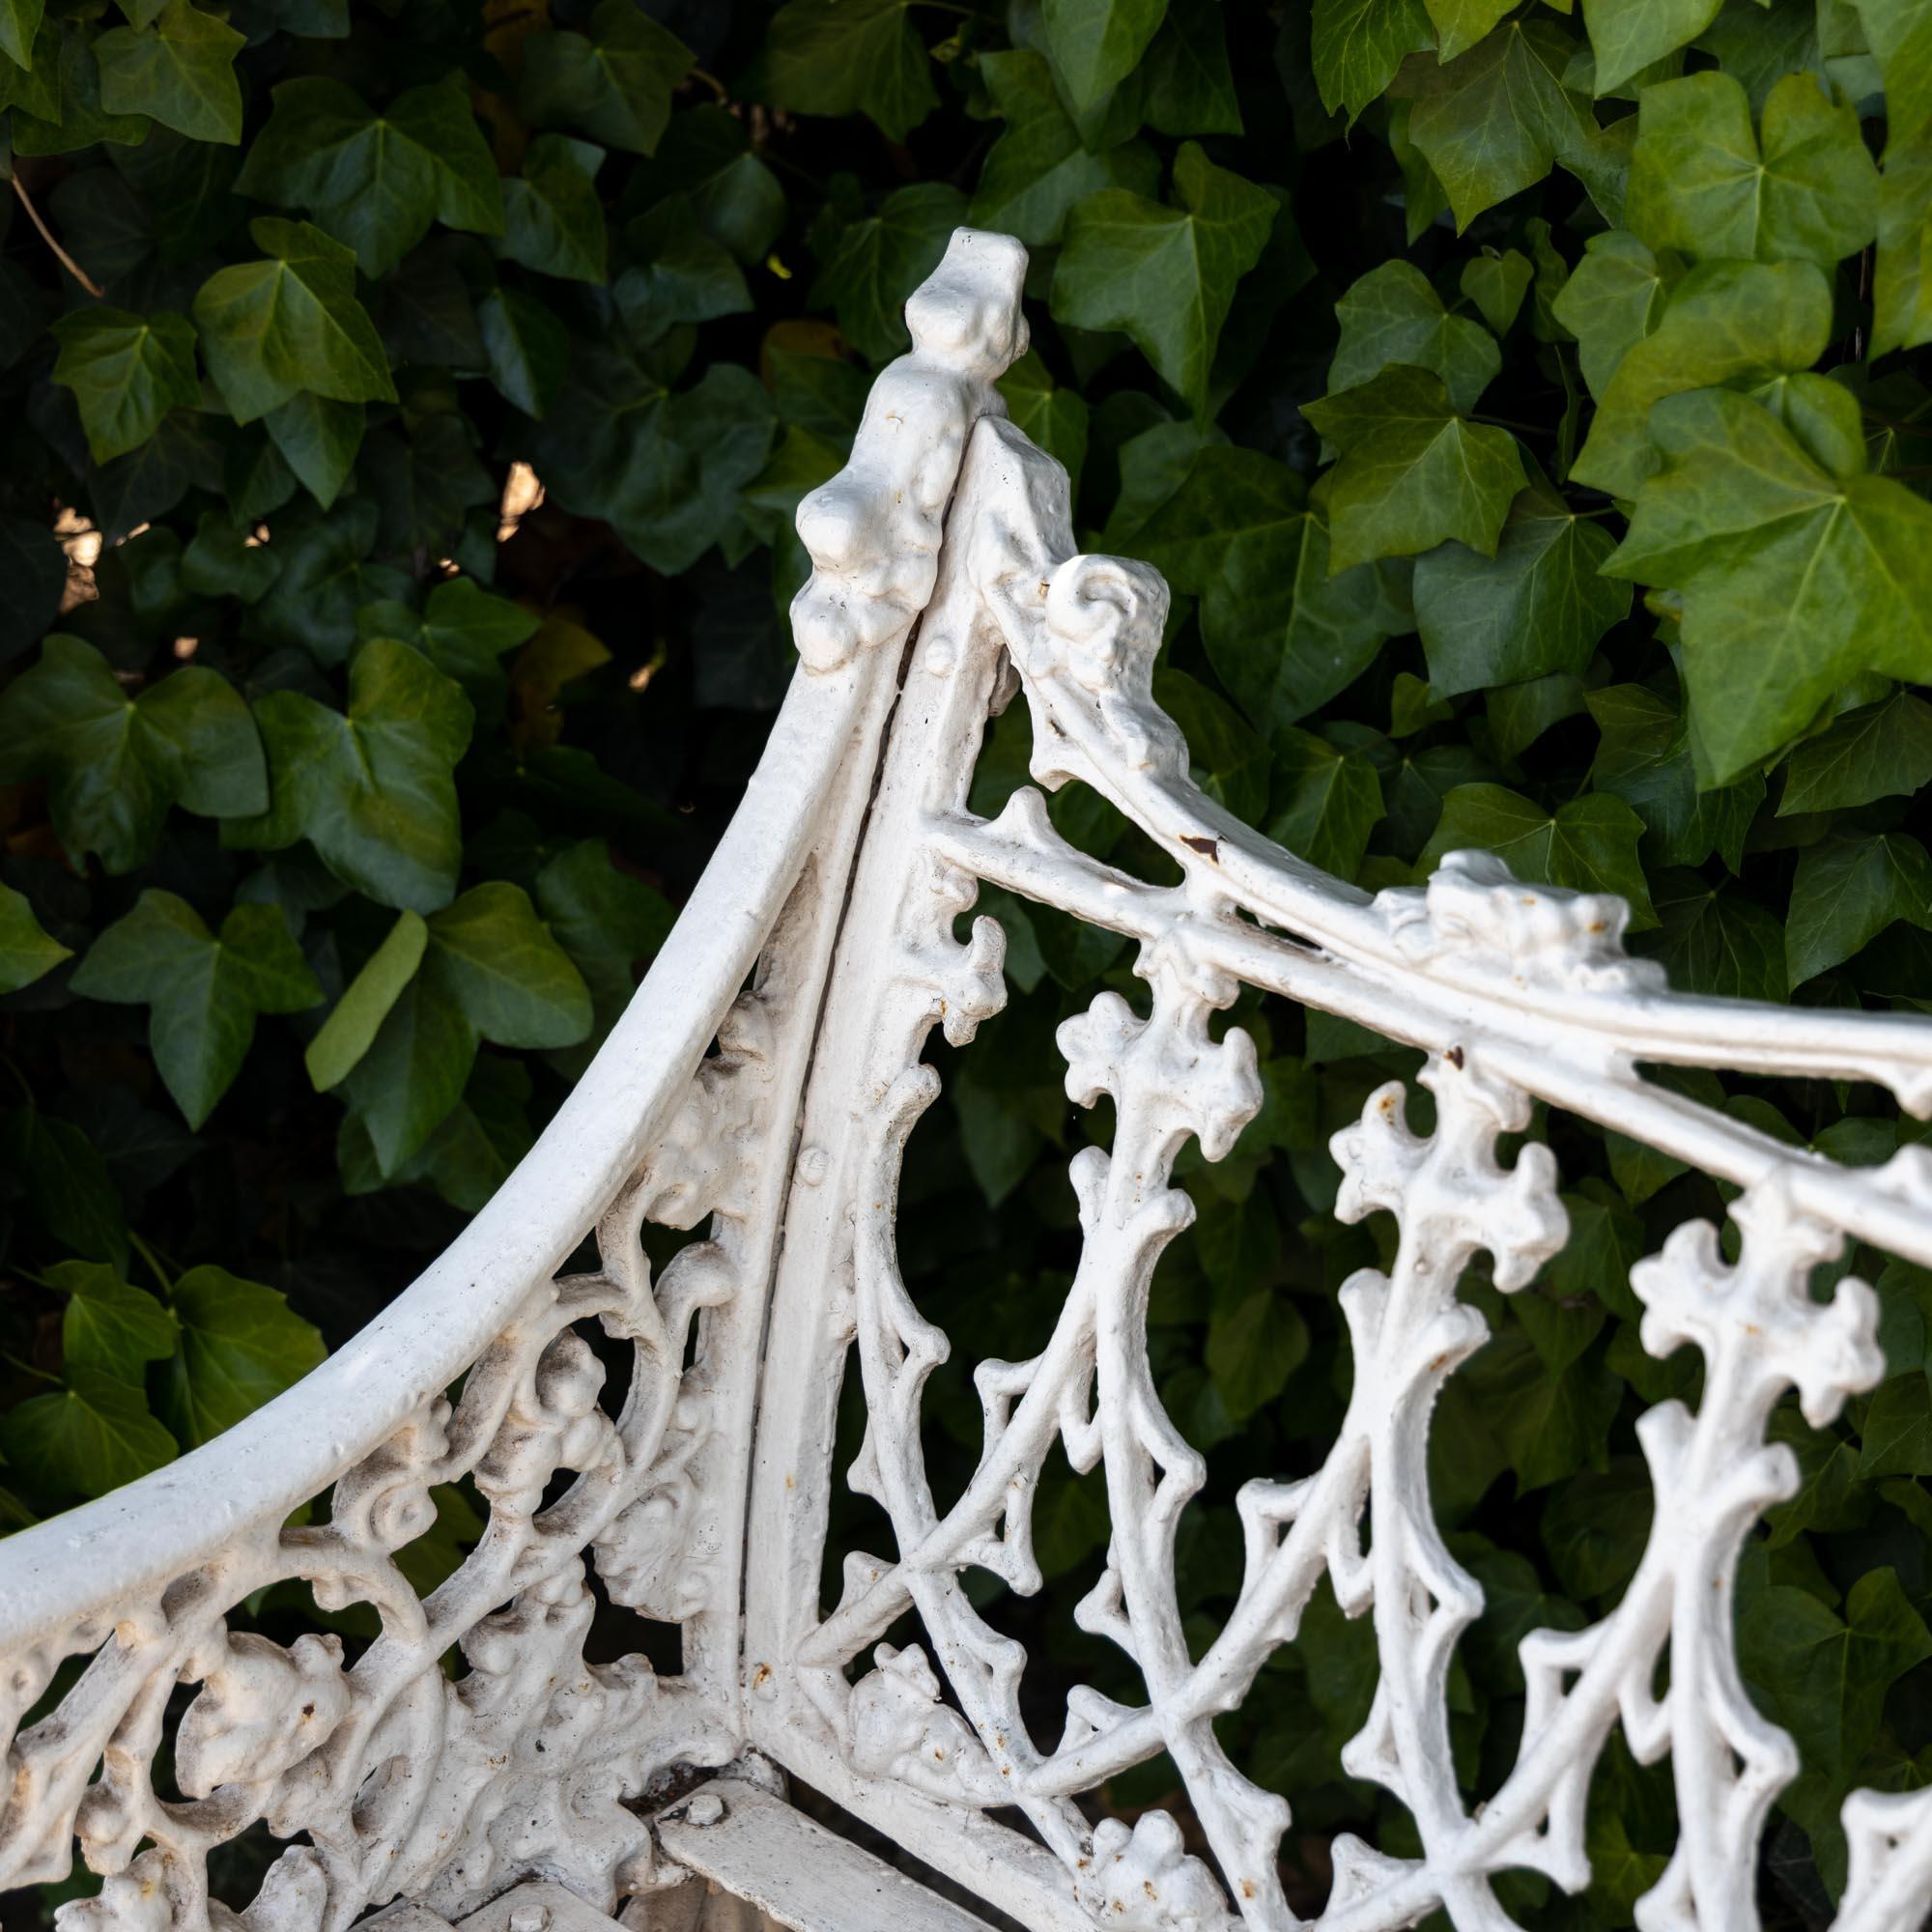 Weiß lackierte Gartenbank aus Gusseisen im neugotischen Stil der viktorianischen Gartenmöbel des späten 19. Jahrhunderts. Das zentrale Medaillon zeigt den mexikanischen Wappenadler, der von 